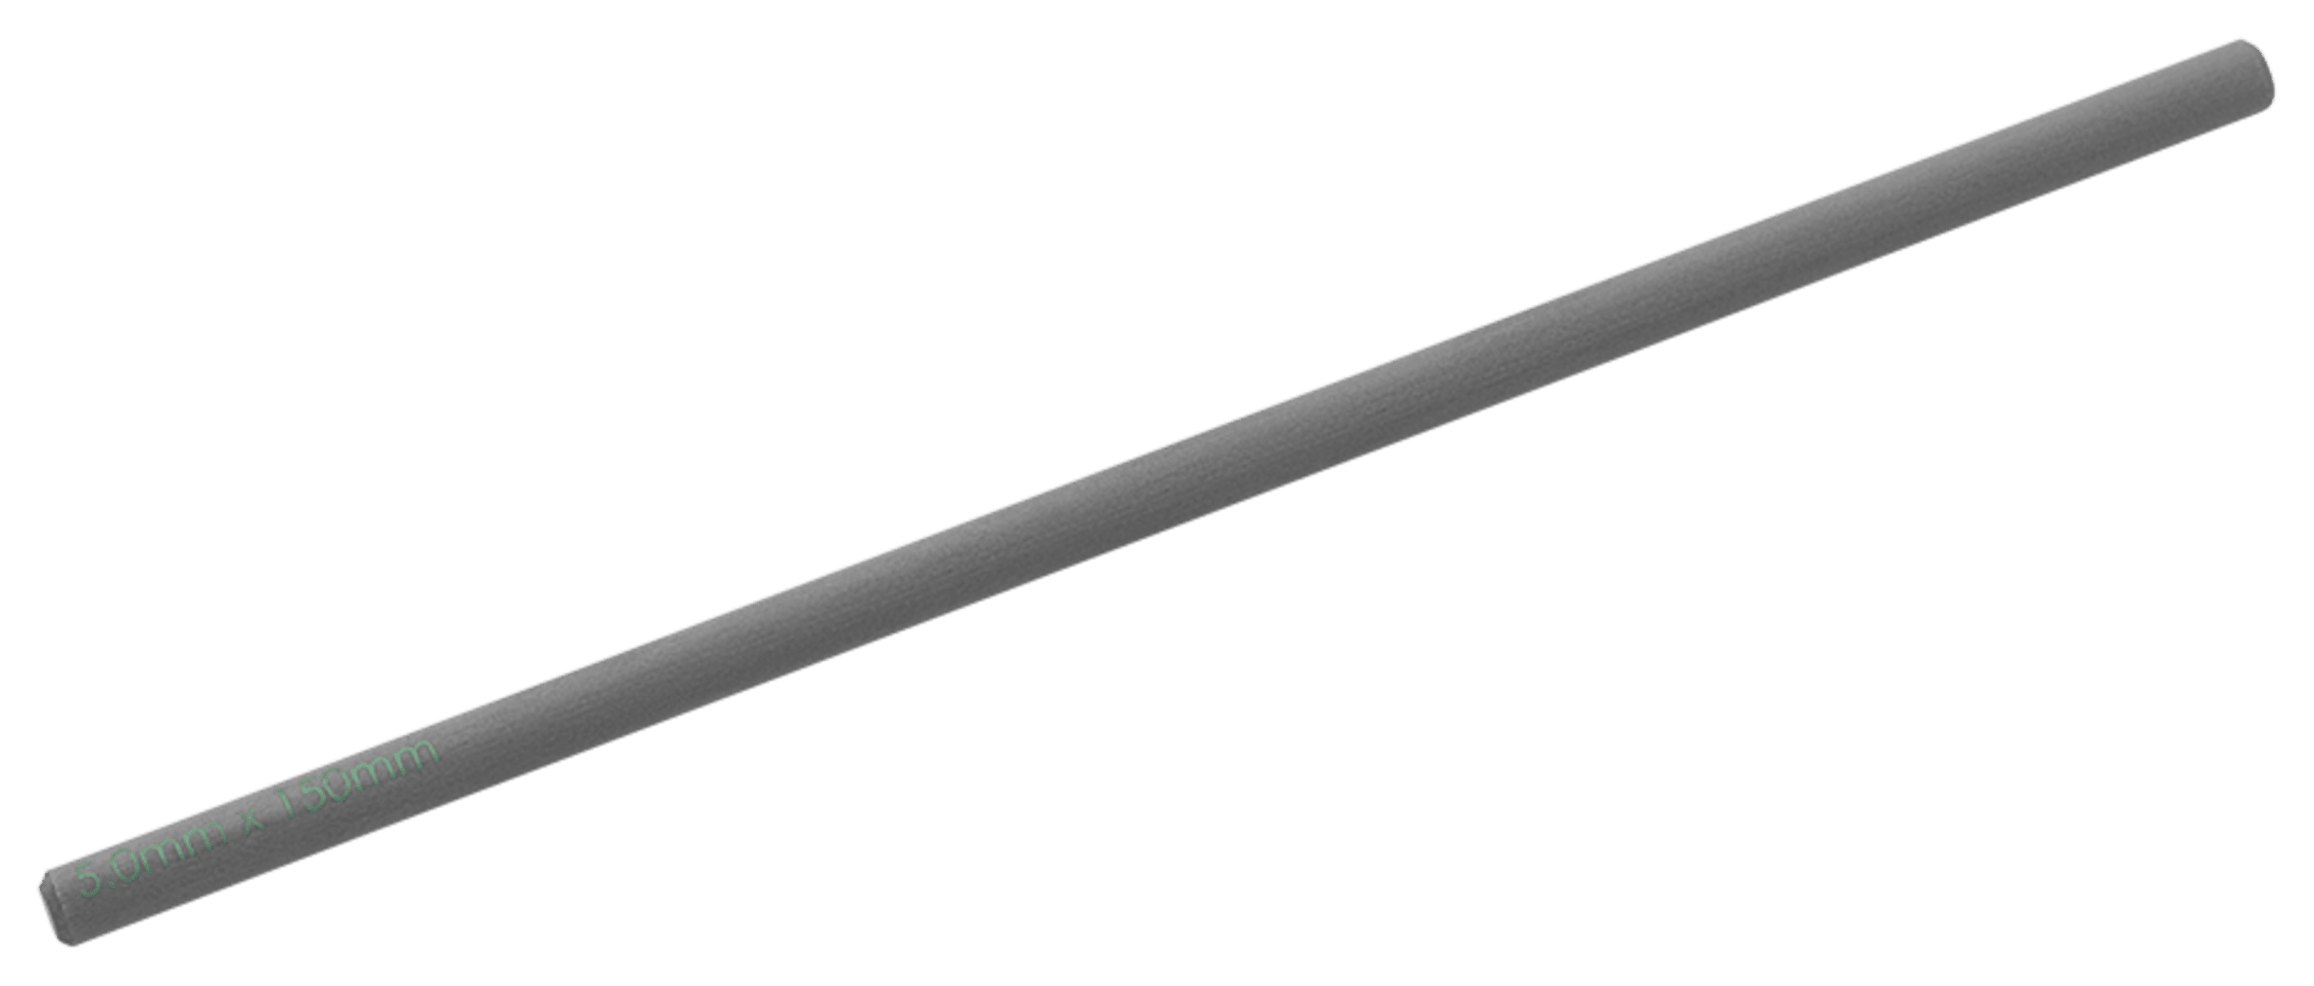 Carbon Fiber Rod, 5mm x 150mm